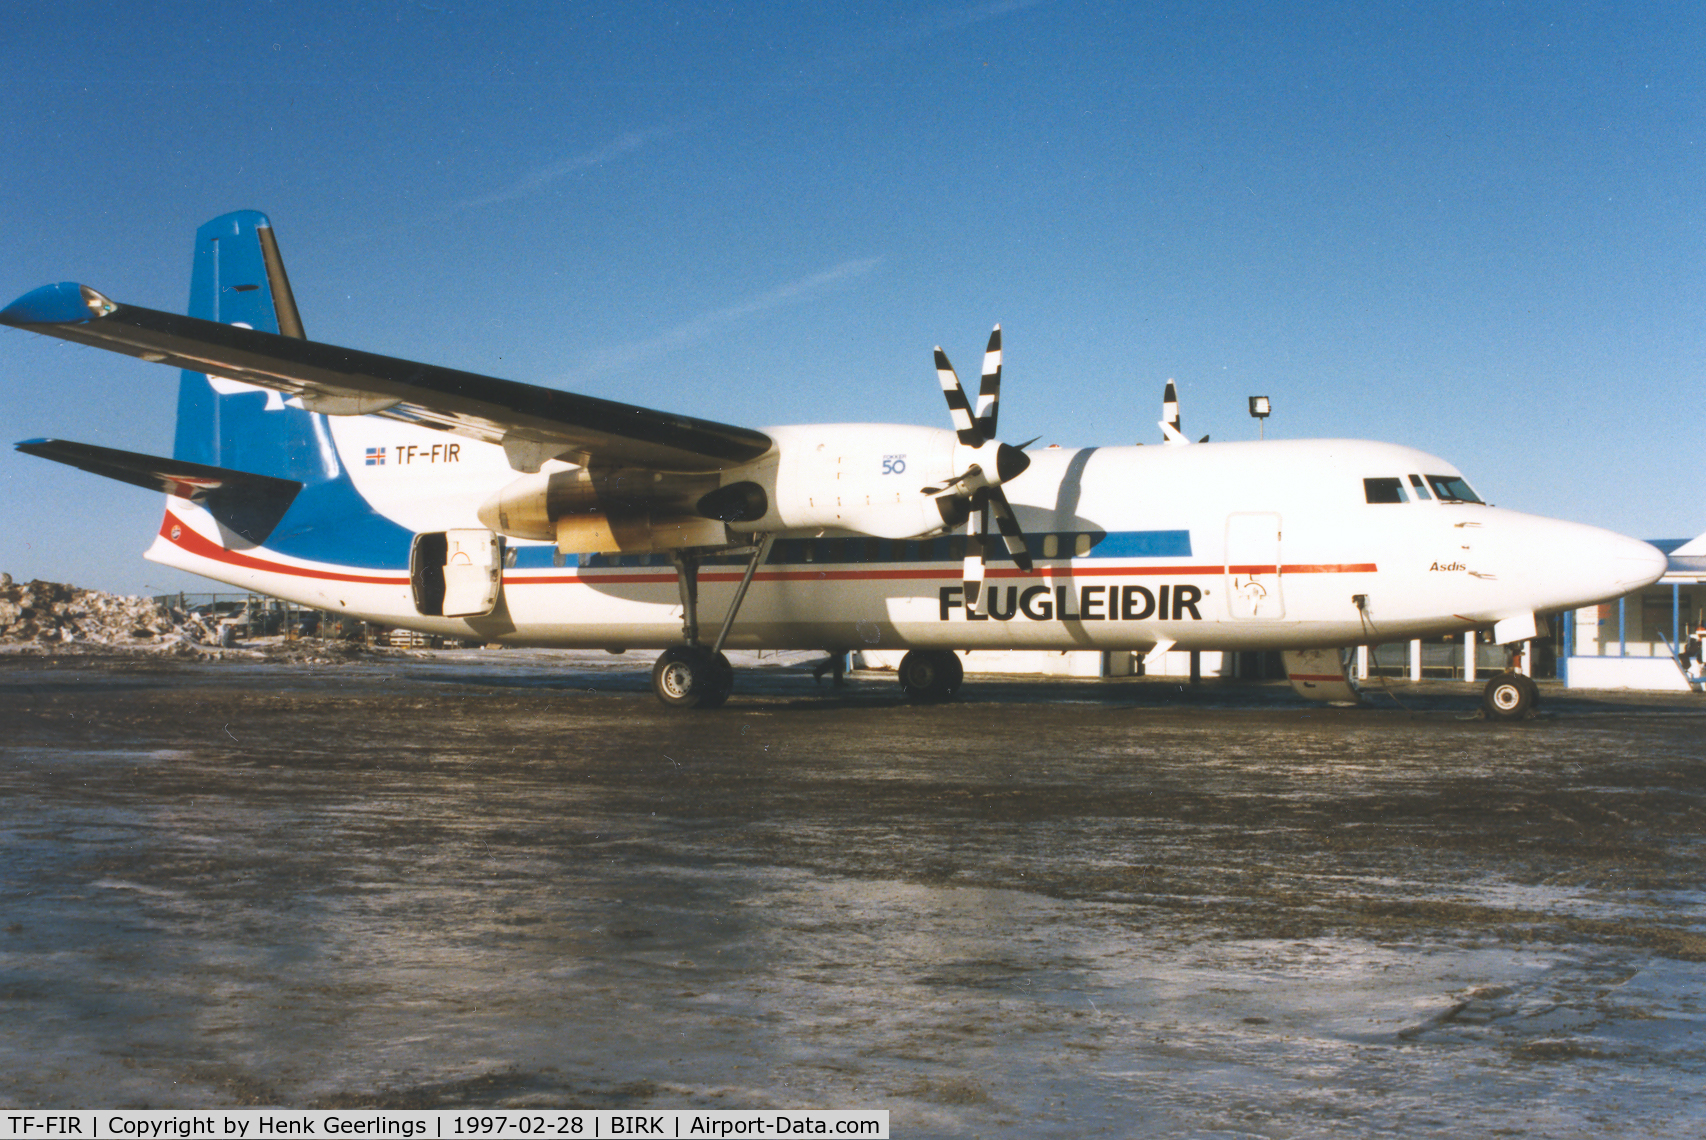 TF-FIR, 1992 Fokker 50 C/N 20243, Flugleidir - Iceland